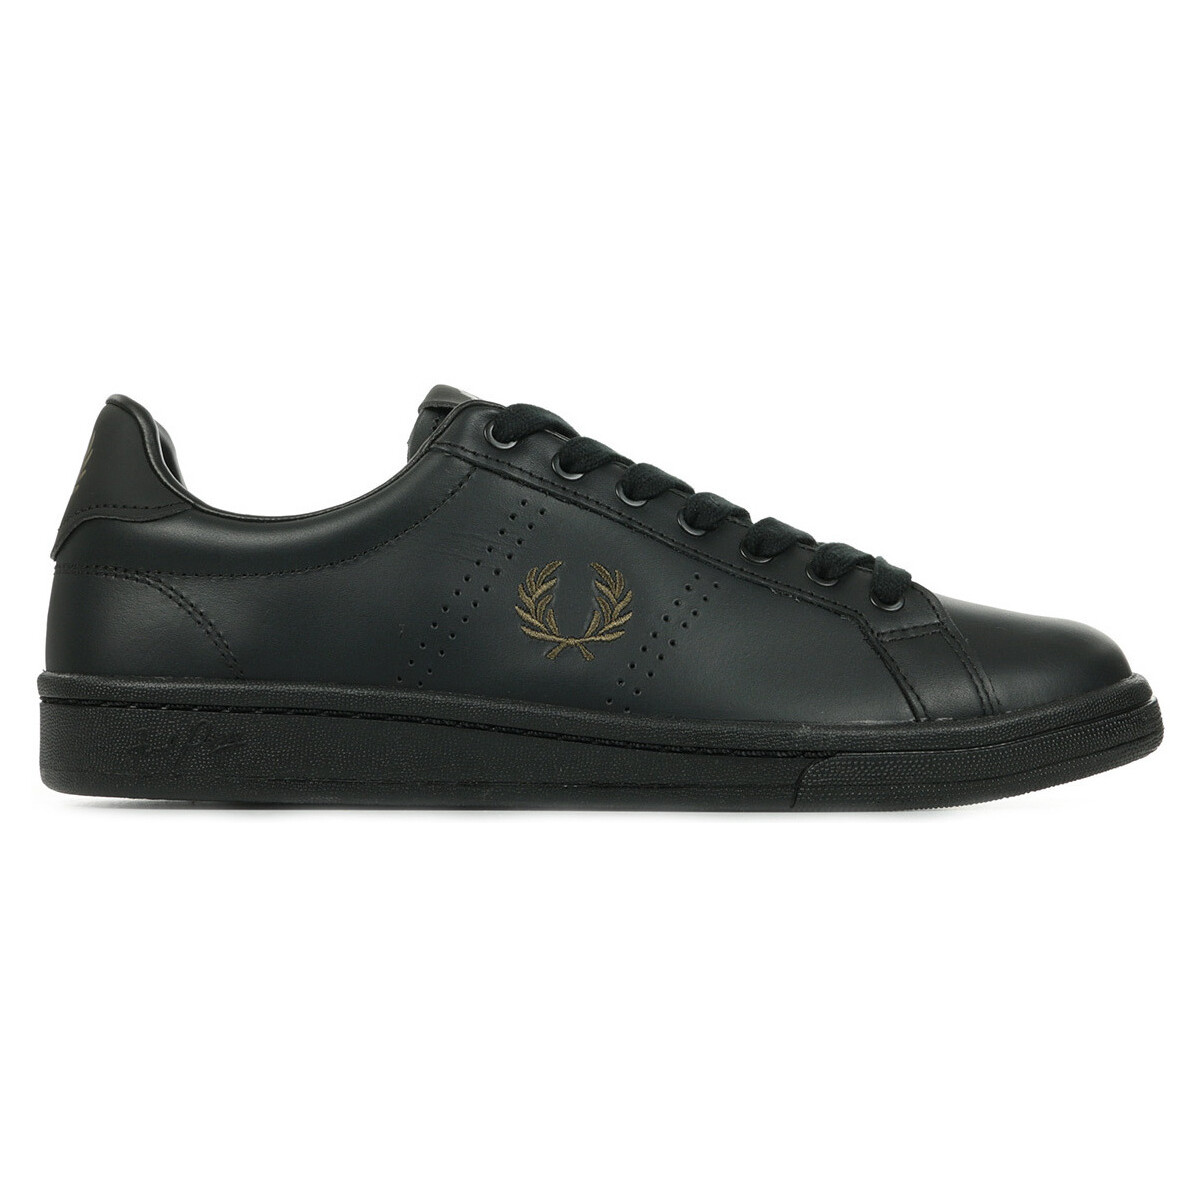 Schoenen Heren Sneakers Fred Perry B721 Leather Zwart